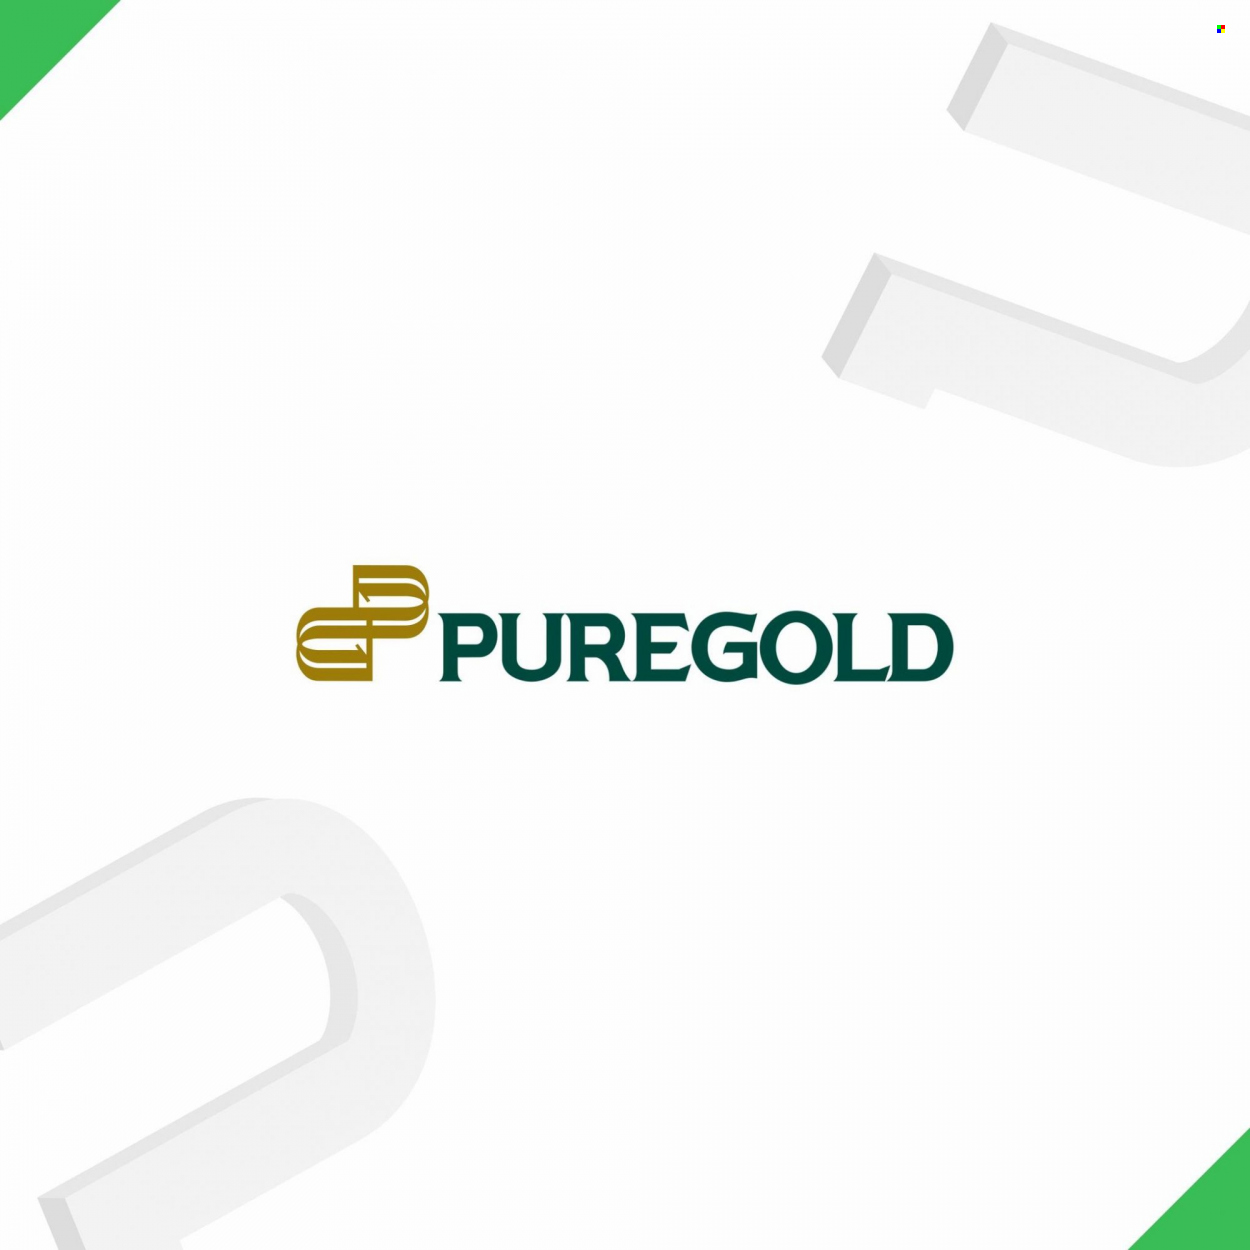 Puregold offer - 5.5.2022 - 31.7.2022.